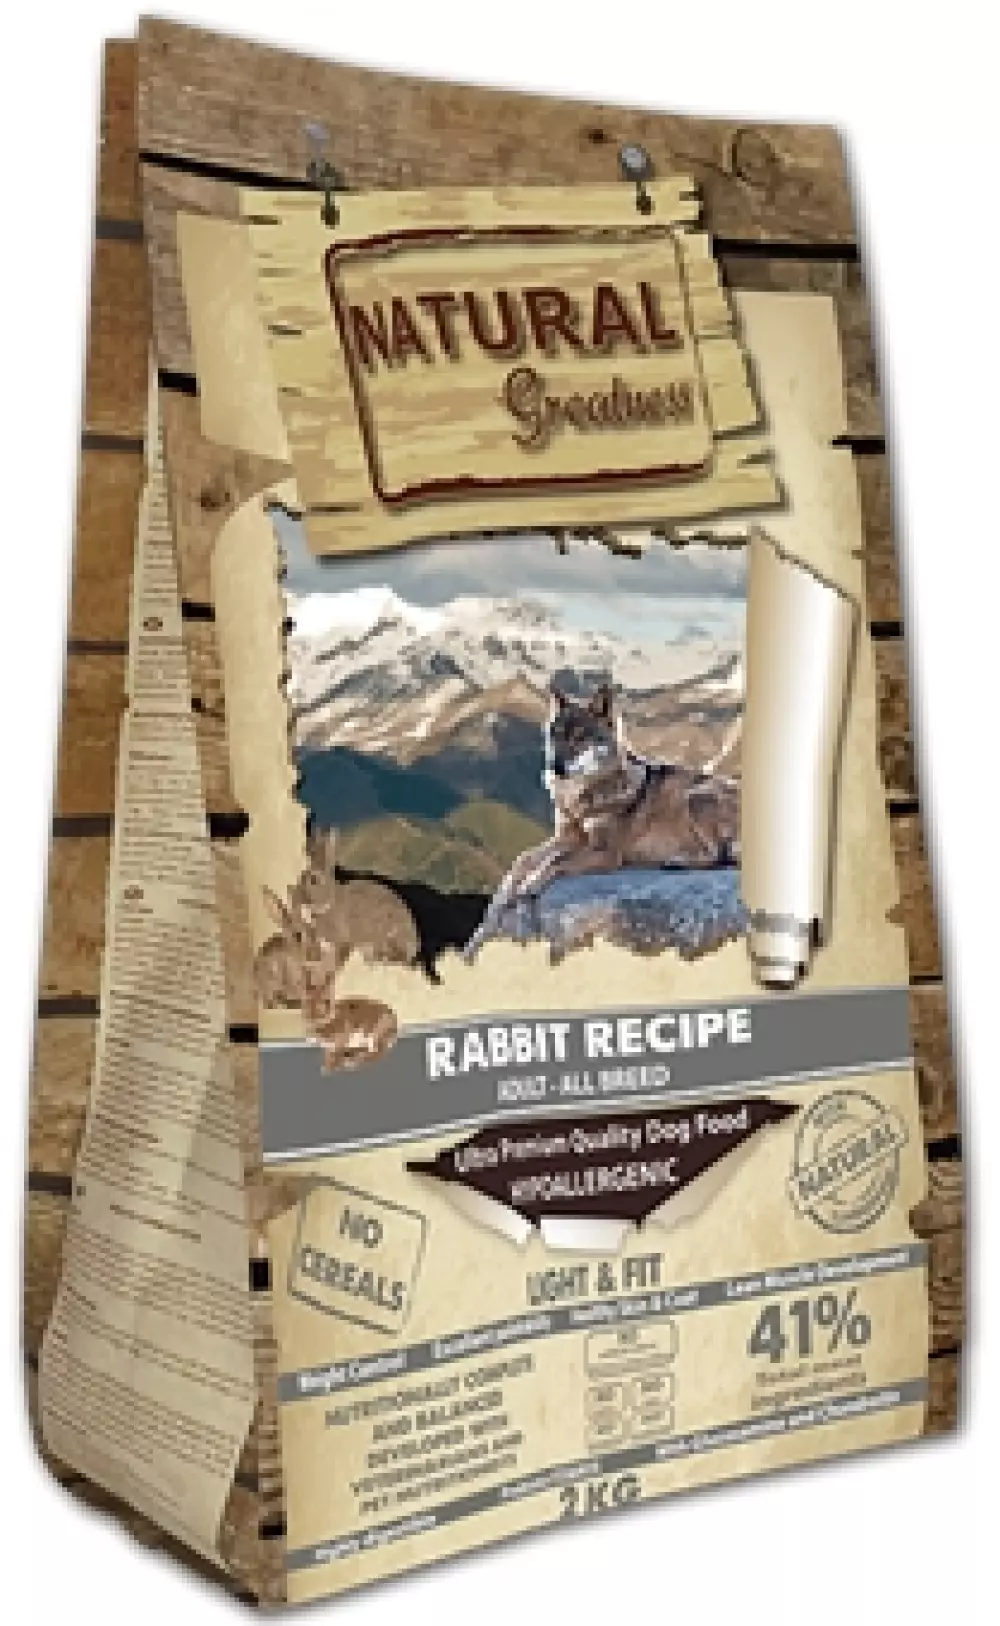 Natural Greatness Rabbit Recipe – Light & Fit, 10 kg, 8425402687383, Hundemat, Natural Greatness, Arctic Pets AS, Rabbit Recipe – Light & Fit, Tørrfor, Voksen